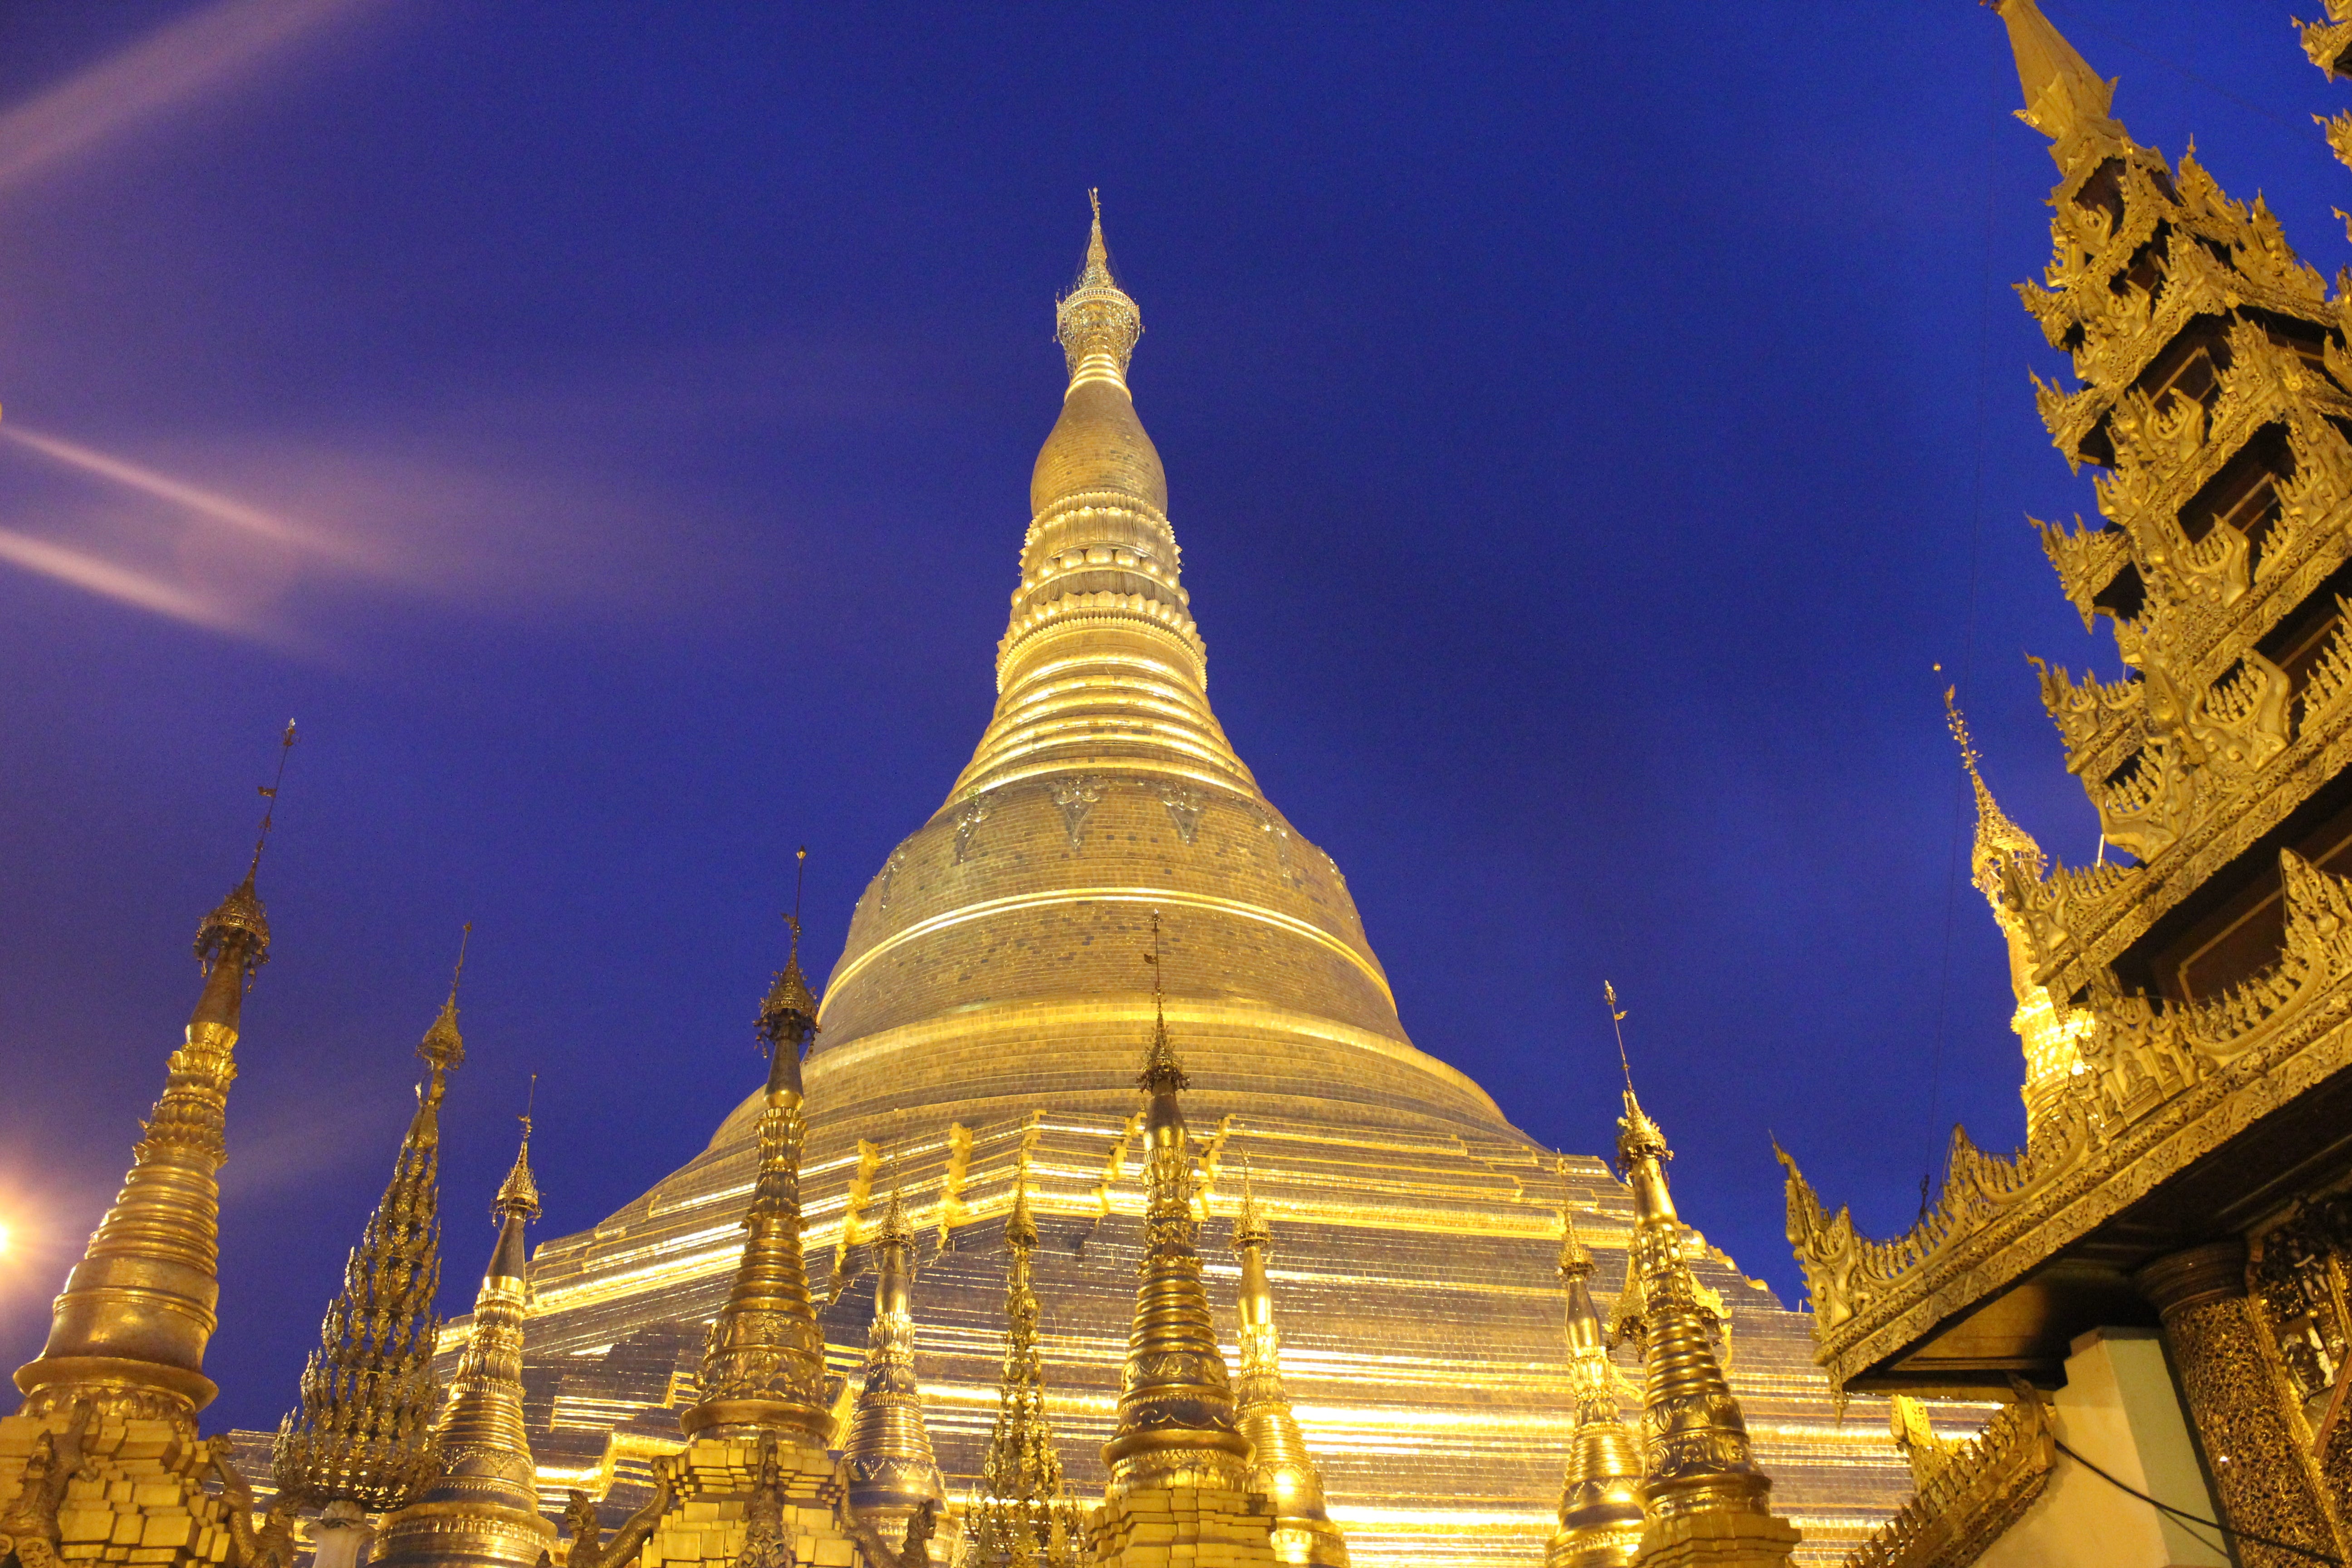 緬甸 仰光大金寺 緬甸人心中一盞不滅的明燈 說到緬甸 許多人第一個想到的就是仰光大金寺 Shwedagon By